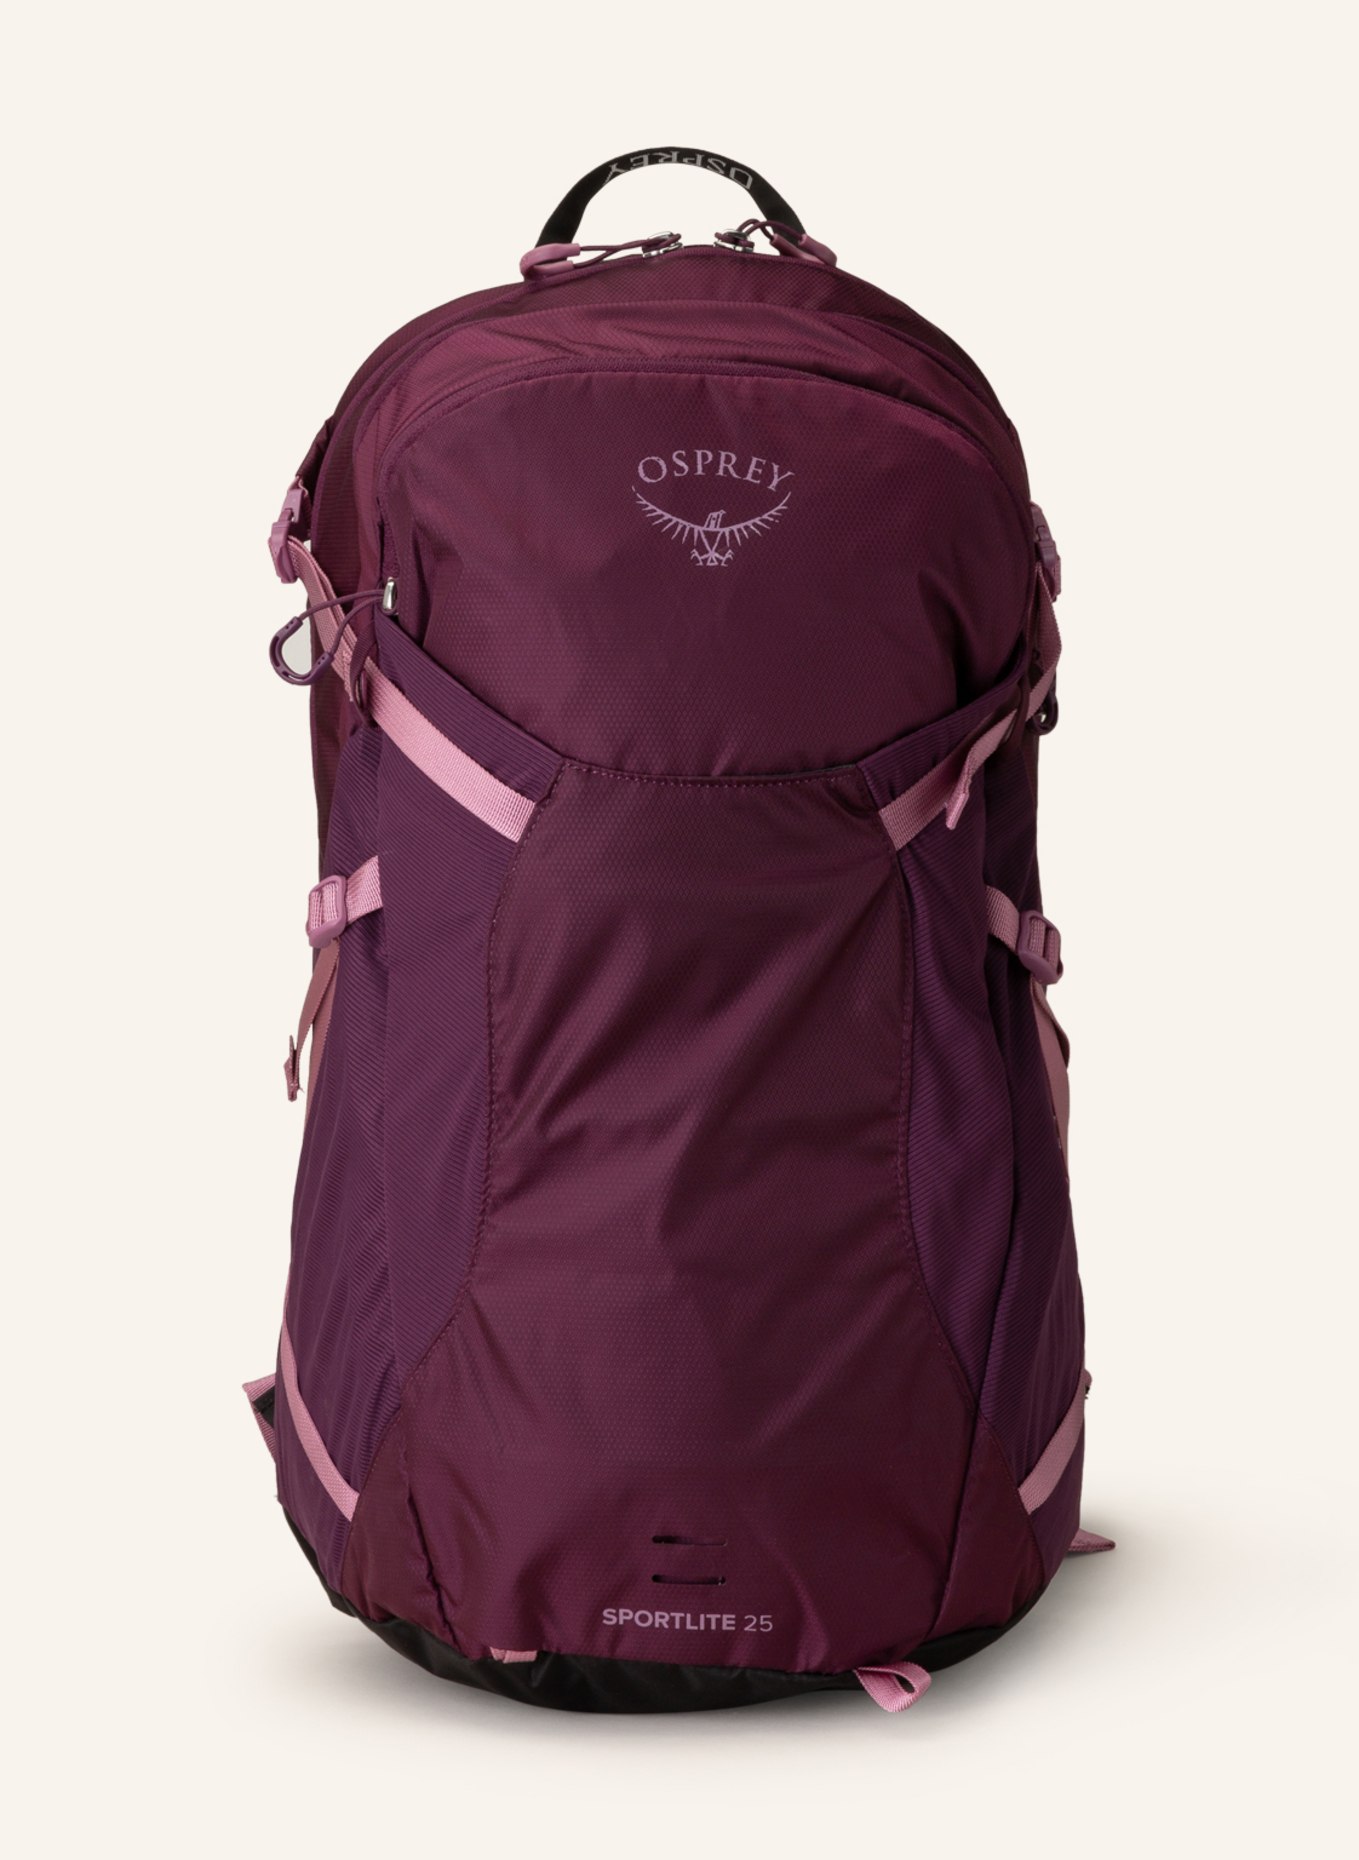 OSPREY Backpack SPORTLITE 25 l, Color: DARK PURPLE (Image 1)